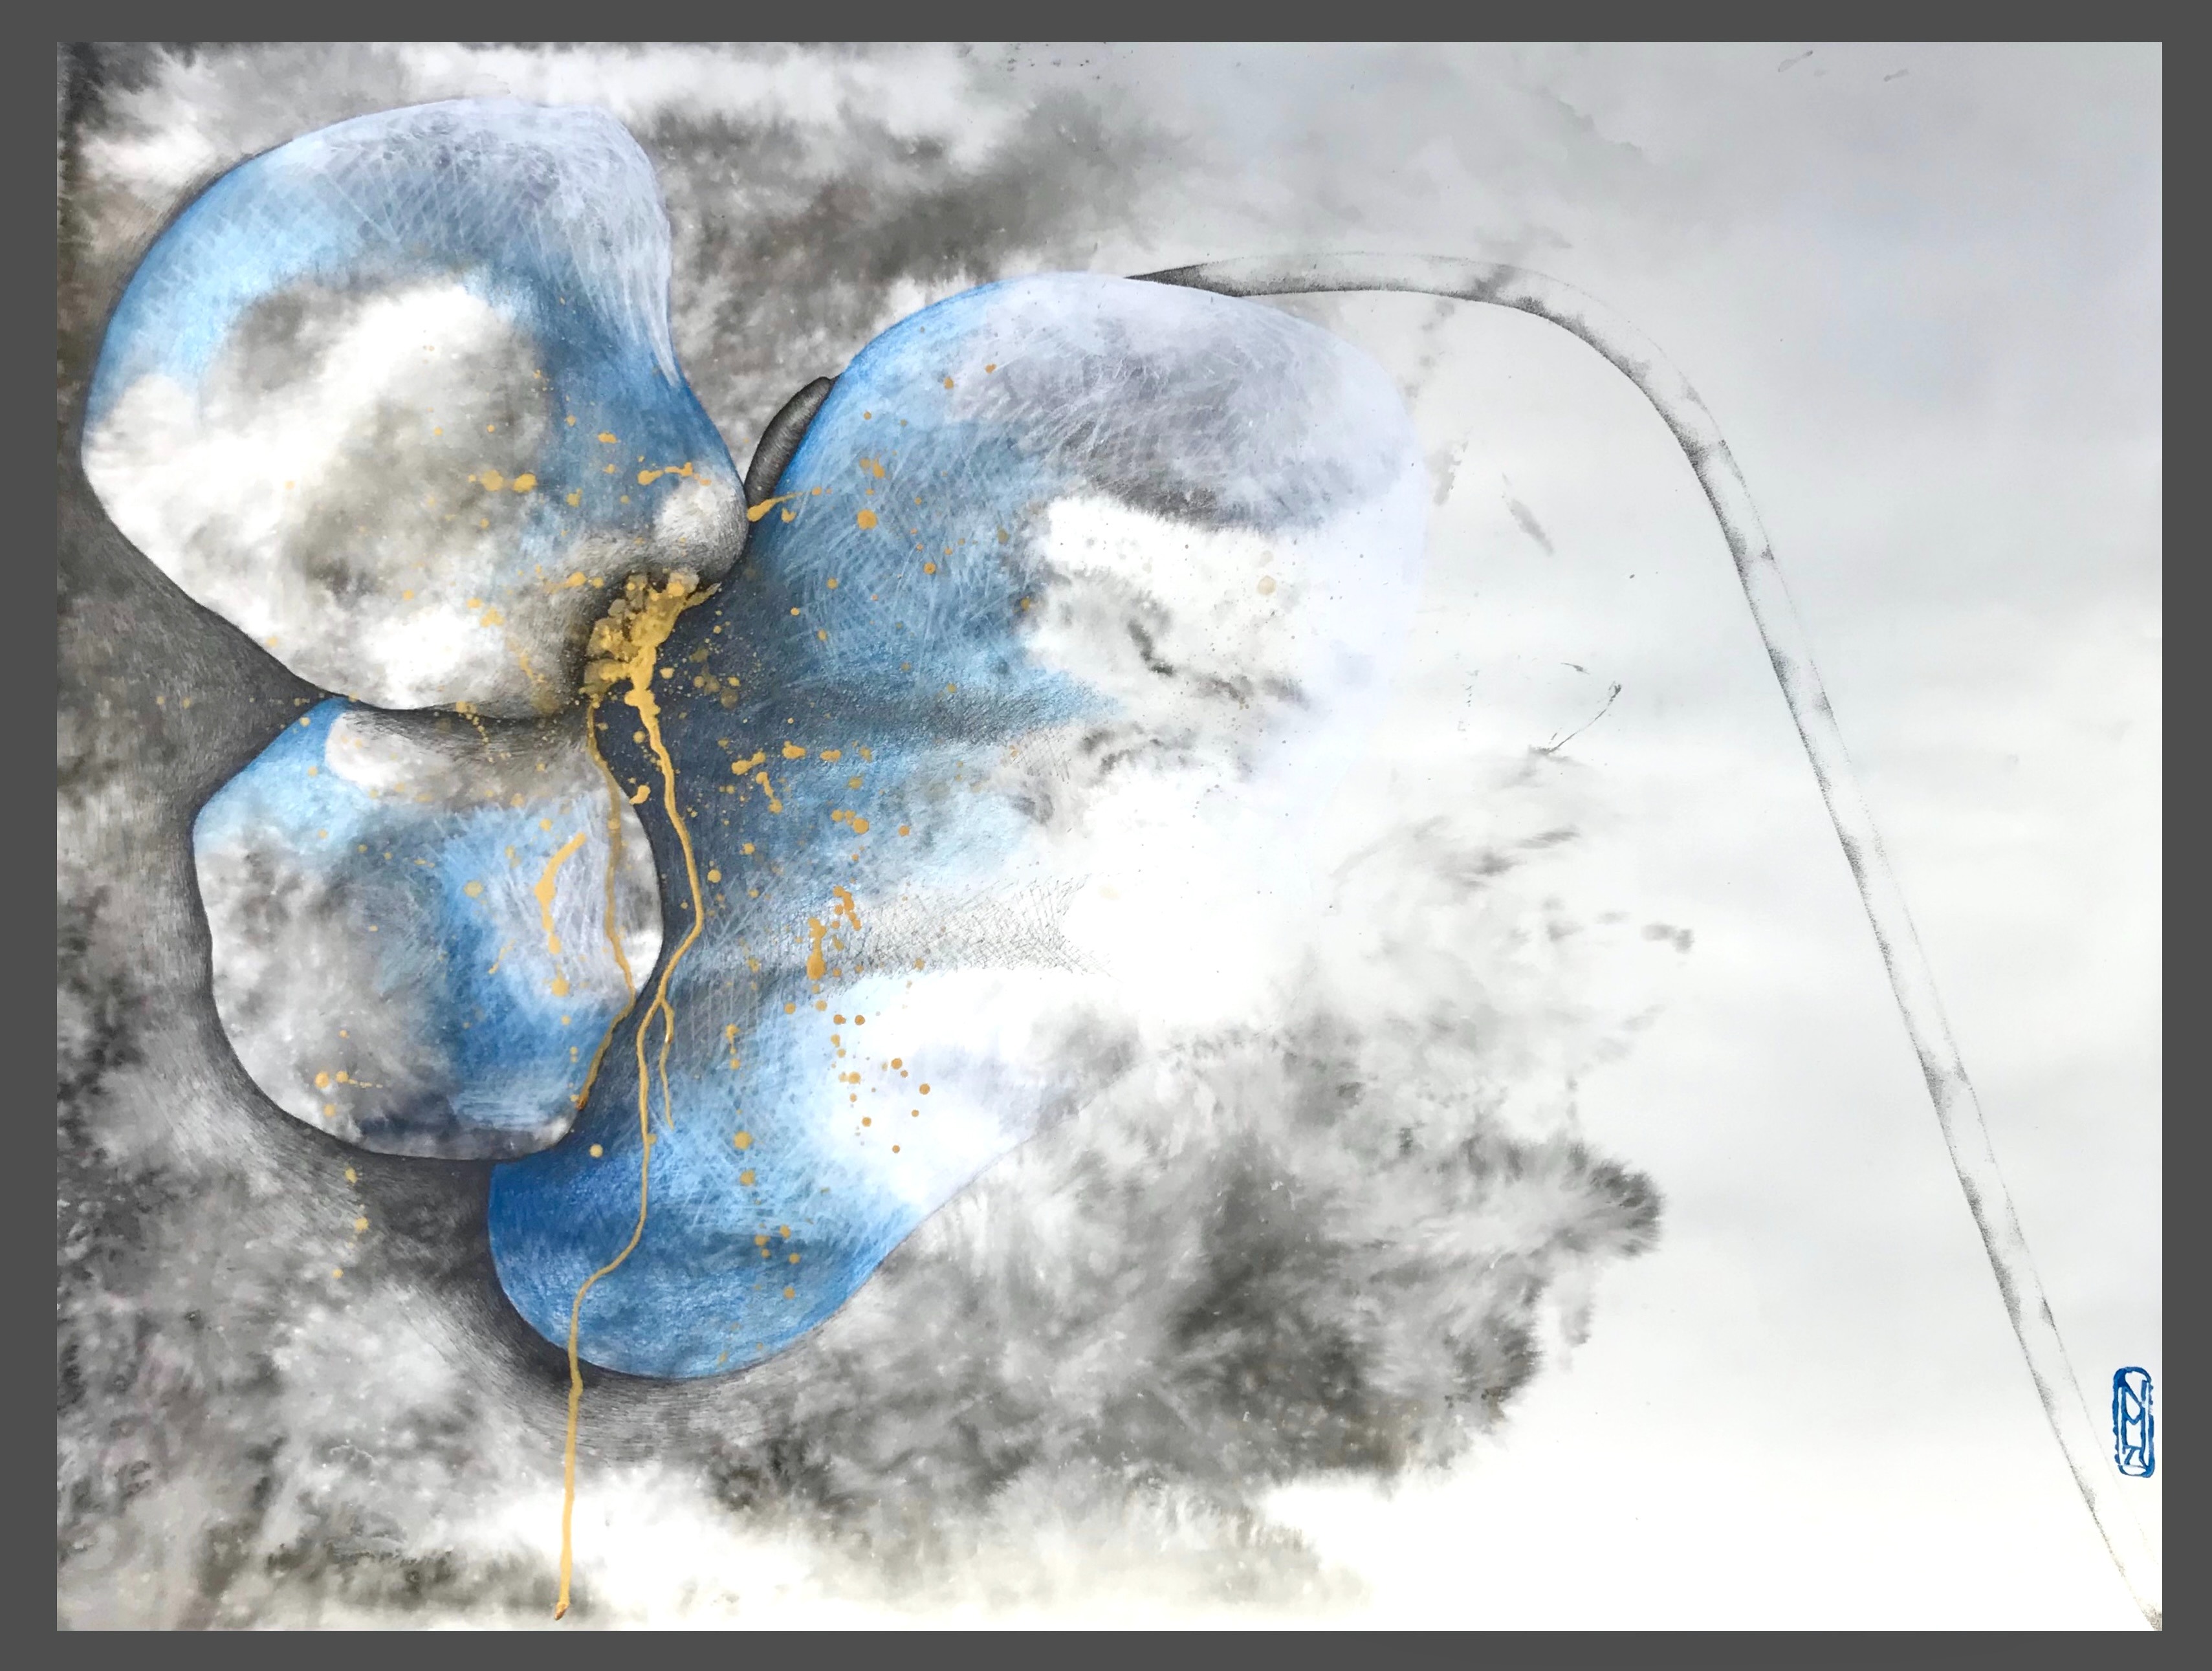 « Cœur brisé » de la série « Fleurs sauvages », encres, cire doré, acrylique et crayon sur papier aquarelles Arches 56x76cm, 2023. © Nan Müller